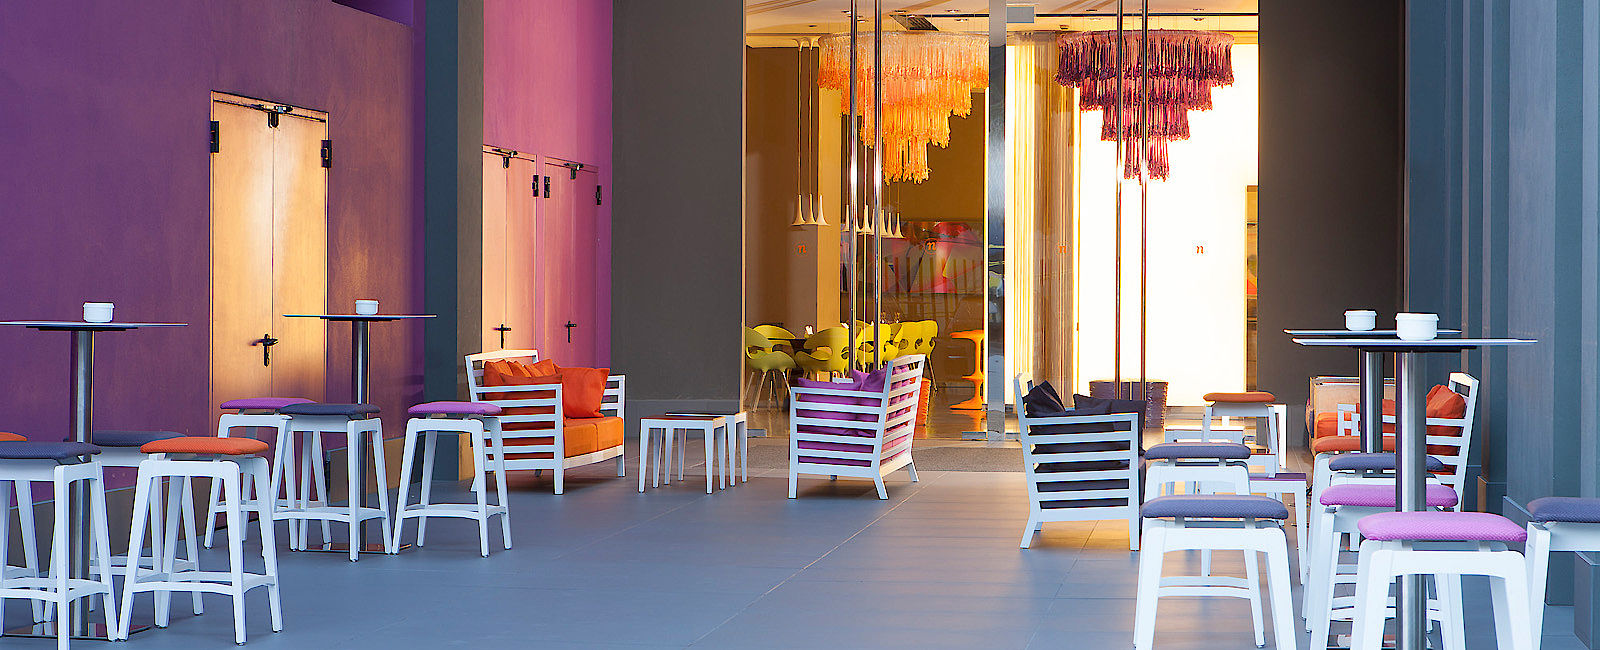 HOTELTEST
 Hotel nhow Milano 
 Fließendes Design oder Alles fließt 